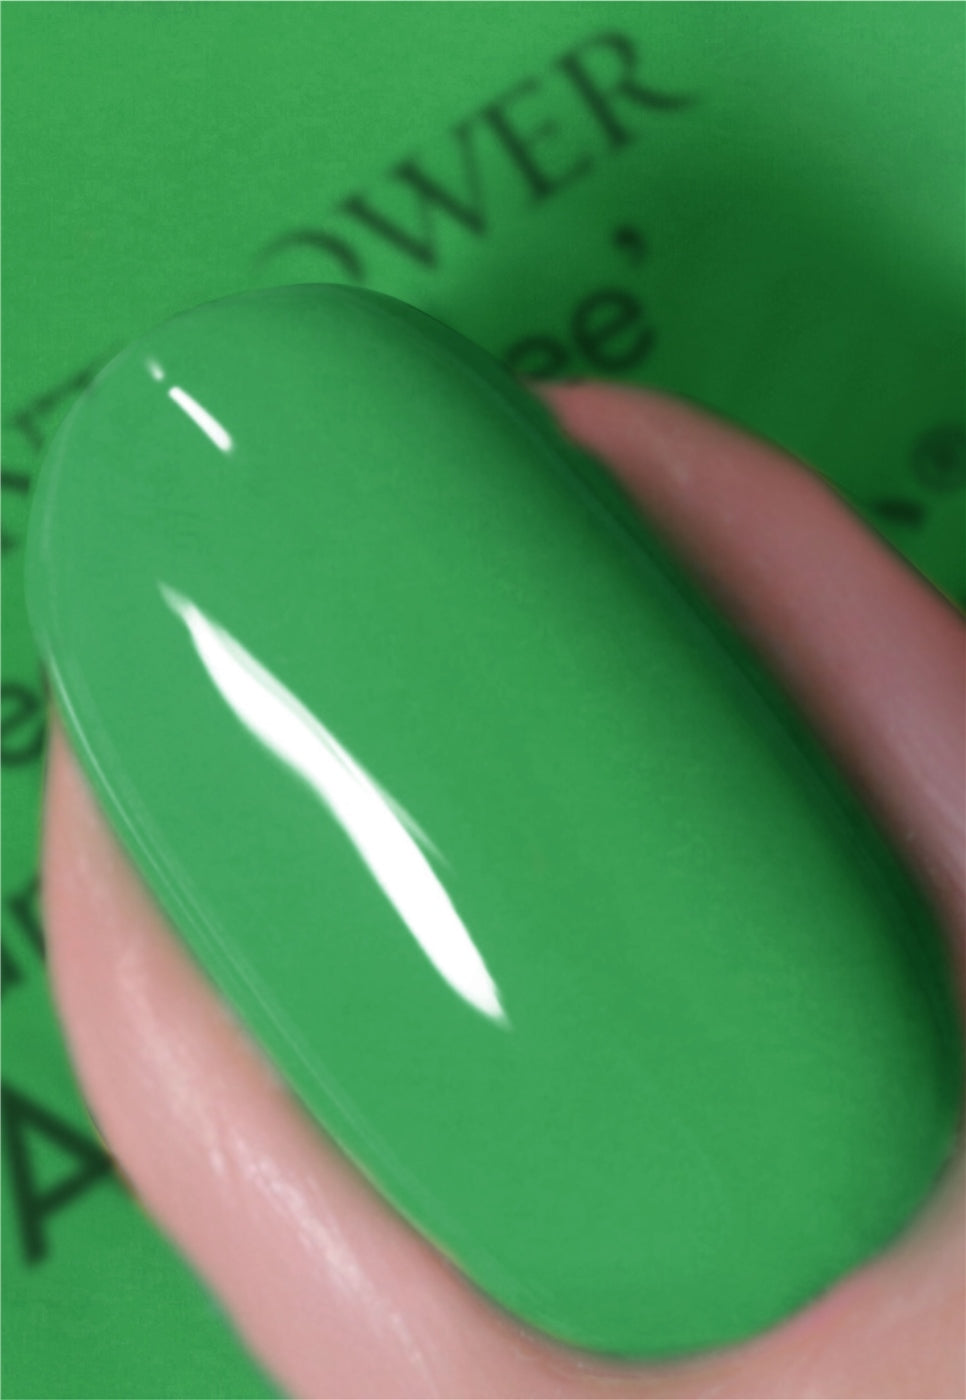 nails inc green nail polish